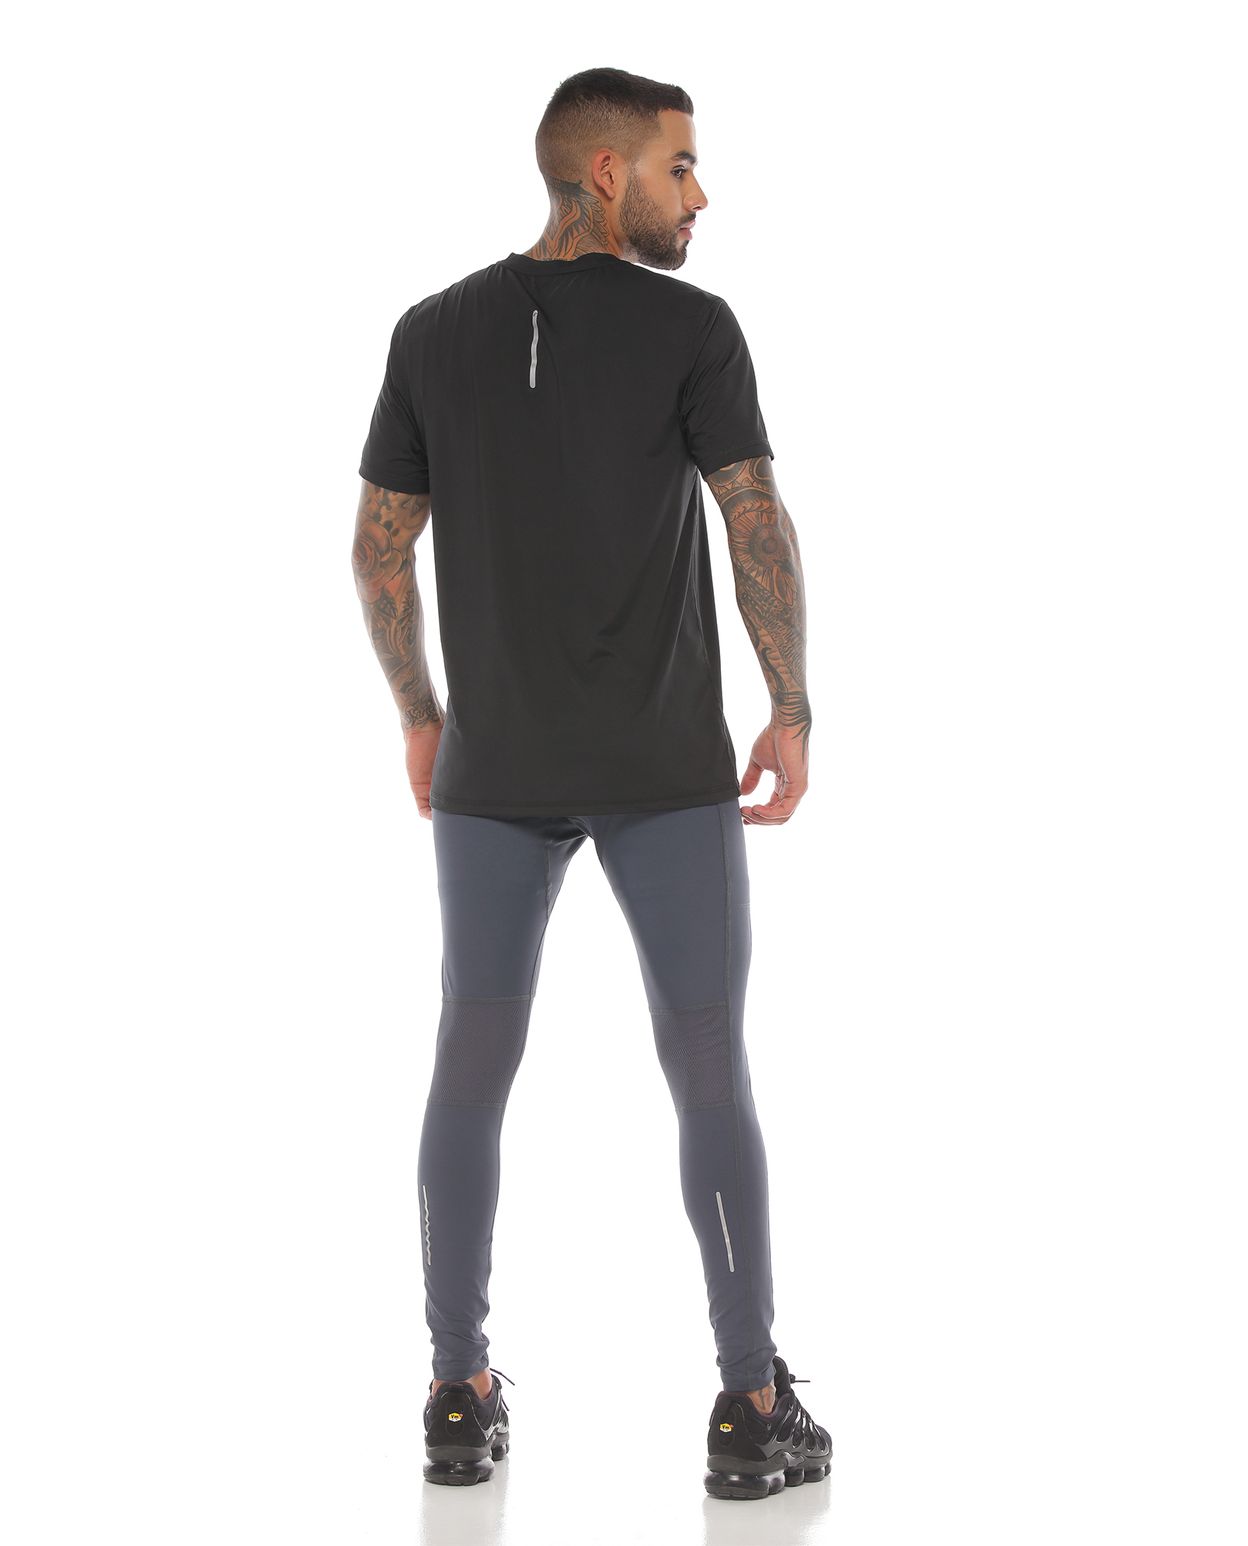 modelo con licra deportiva color gris oscuro y camiseta deportiva color negro para hombre cuerpo completo parte trasera